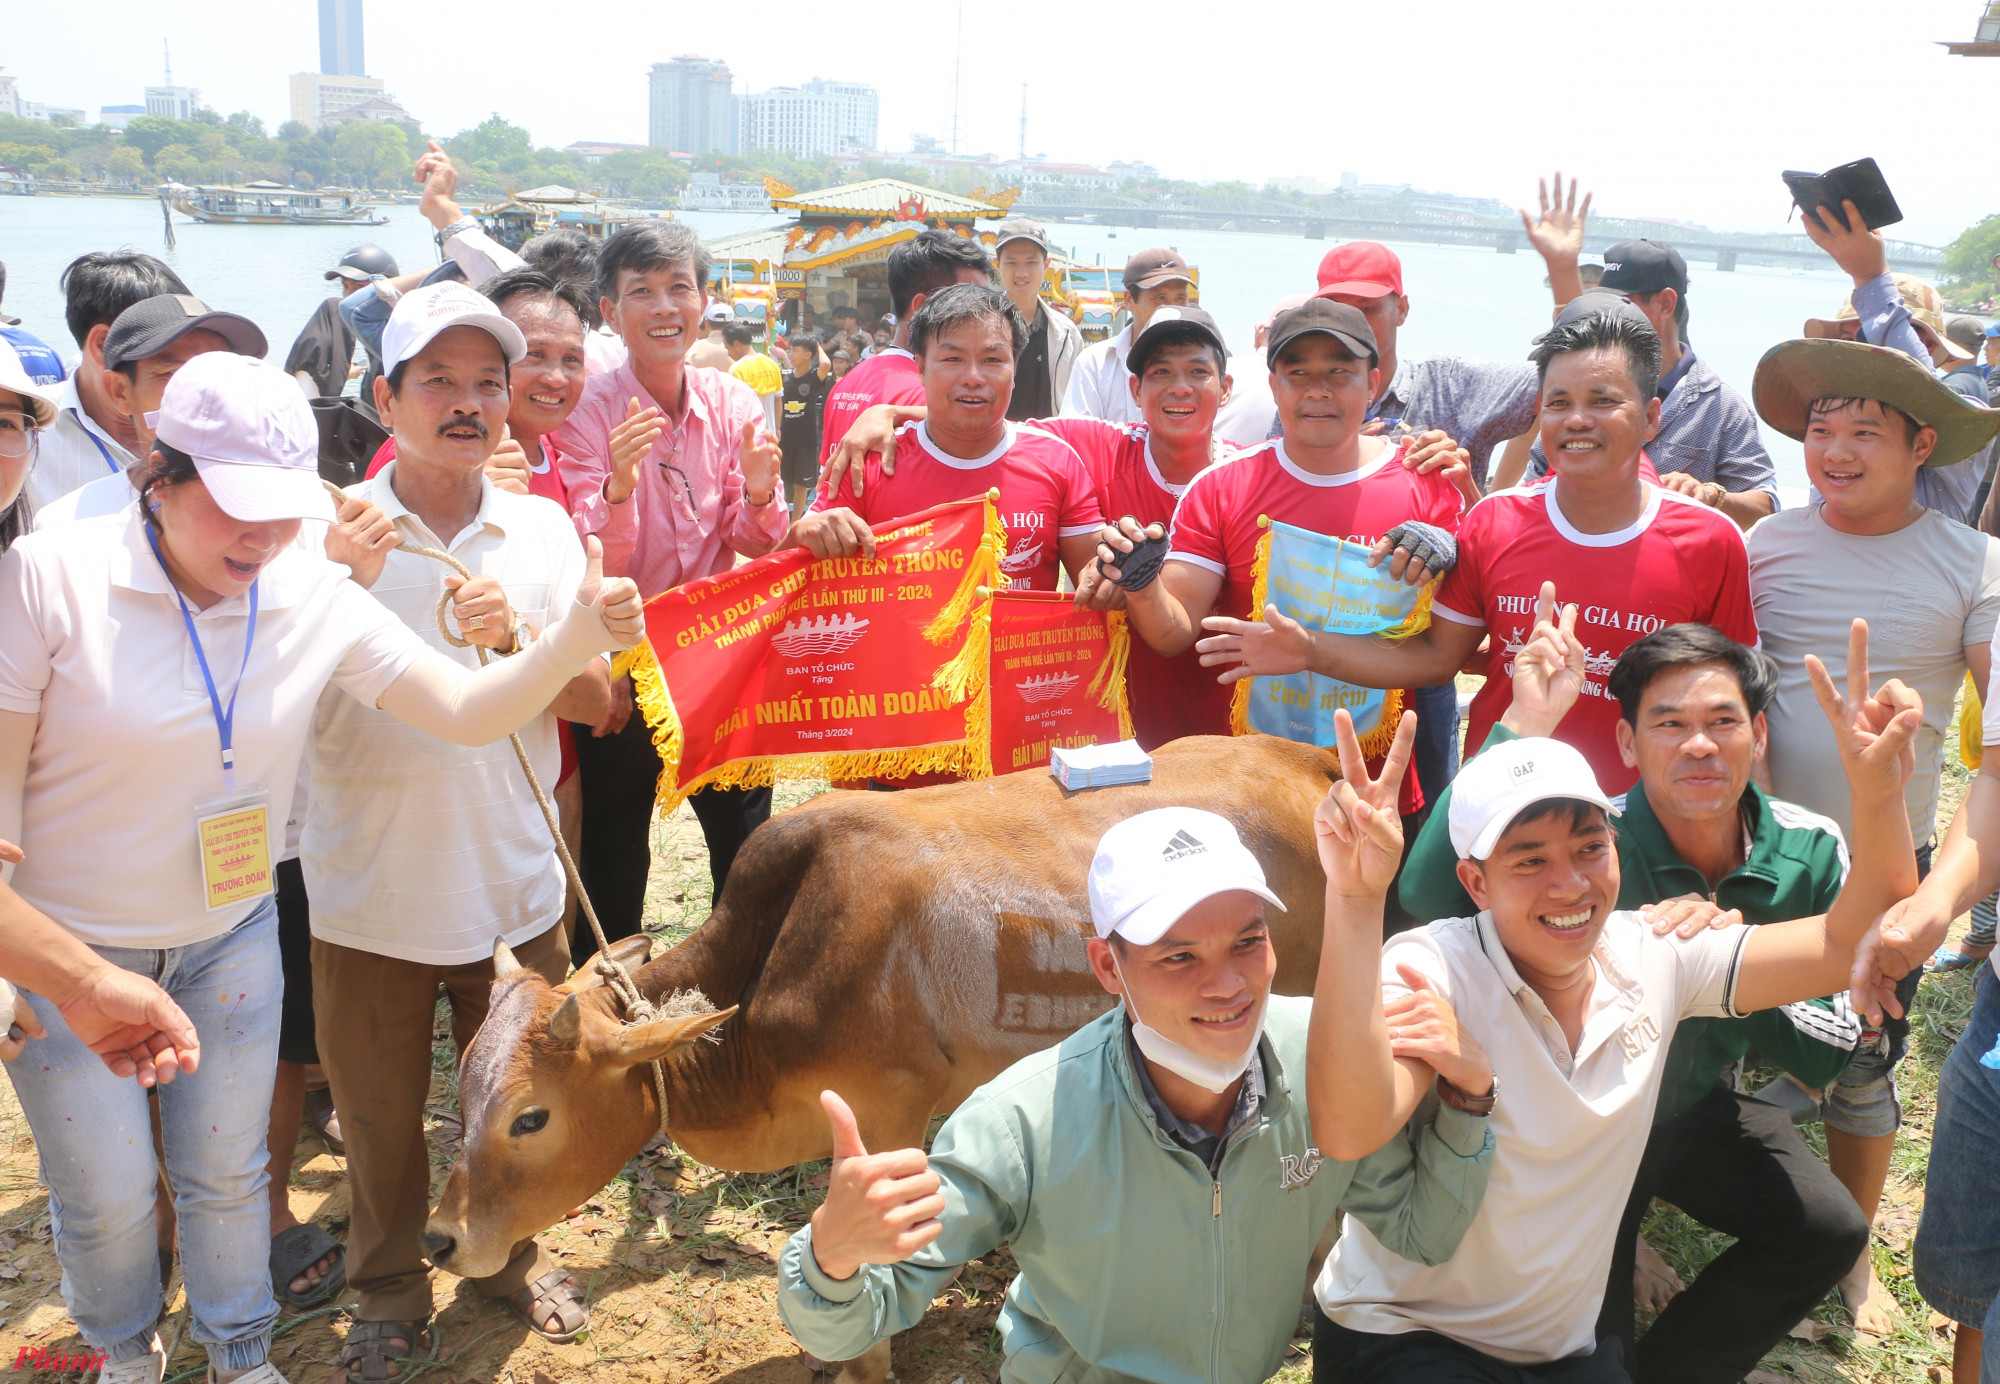 Đội đu ghe phường Gia Hội (áo nàu đỏ) cũng là đội đạt giải nhất toàn đoàn, với phần thường là một con bò do EduFarm Phố cổ Bao Vinh Huế tài trợ